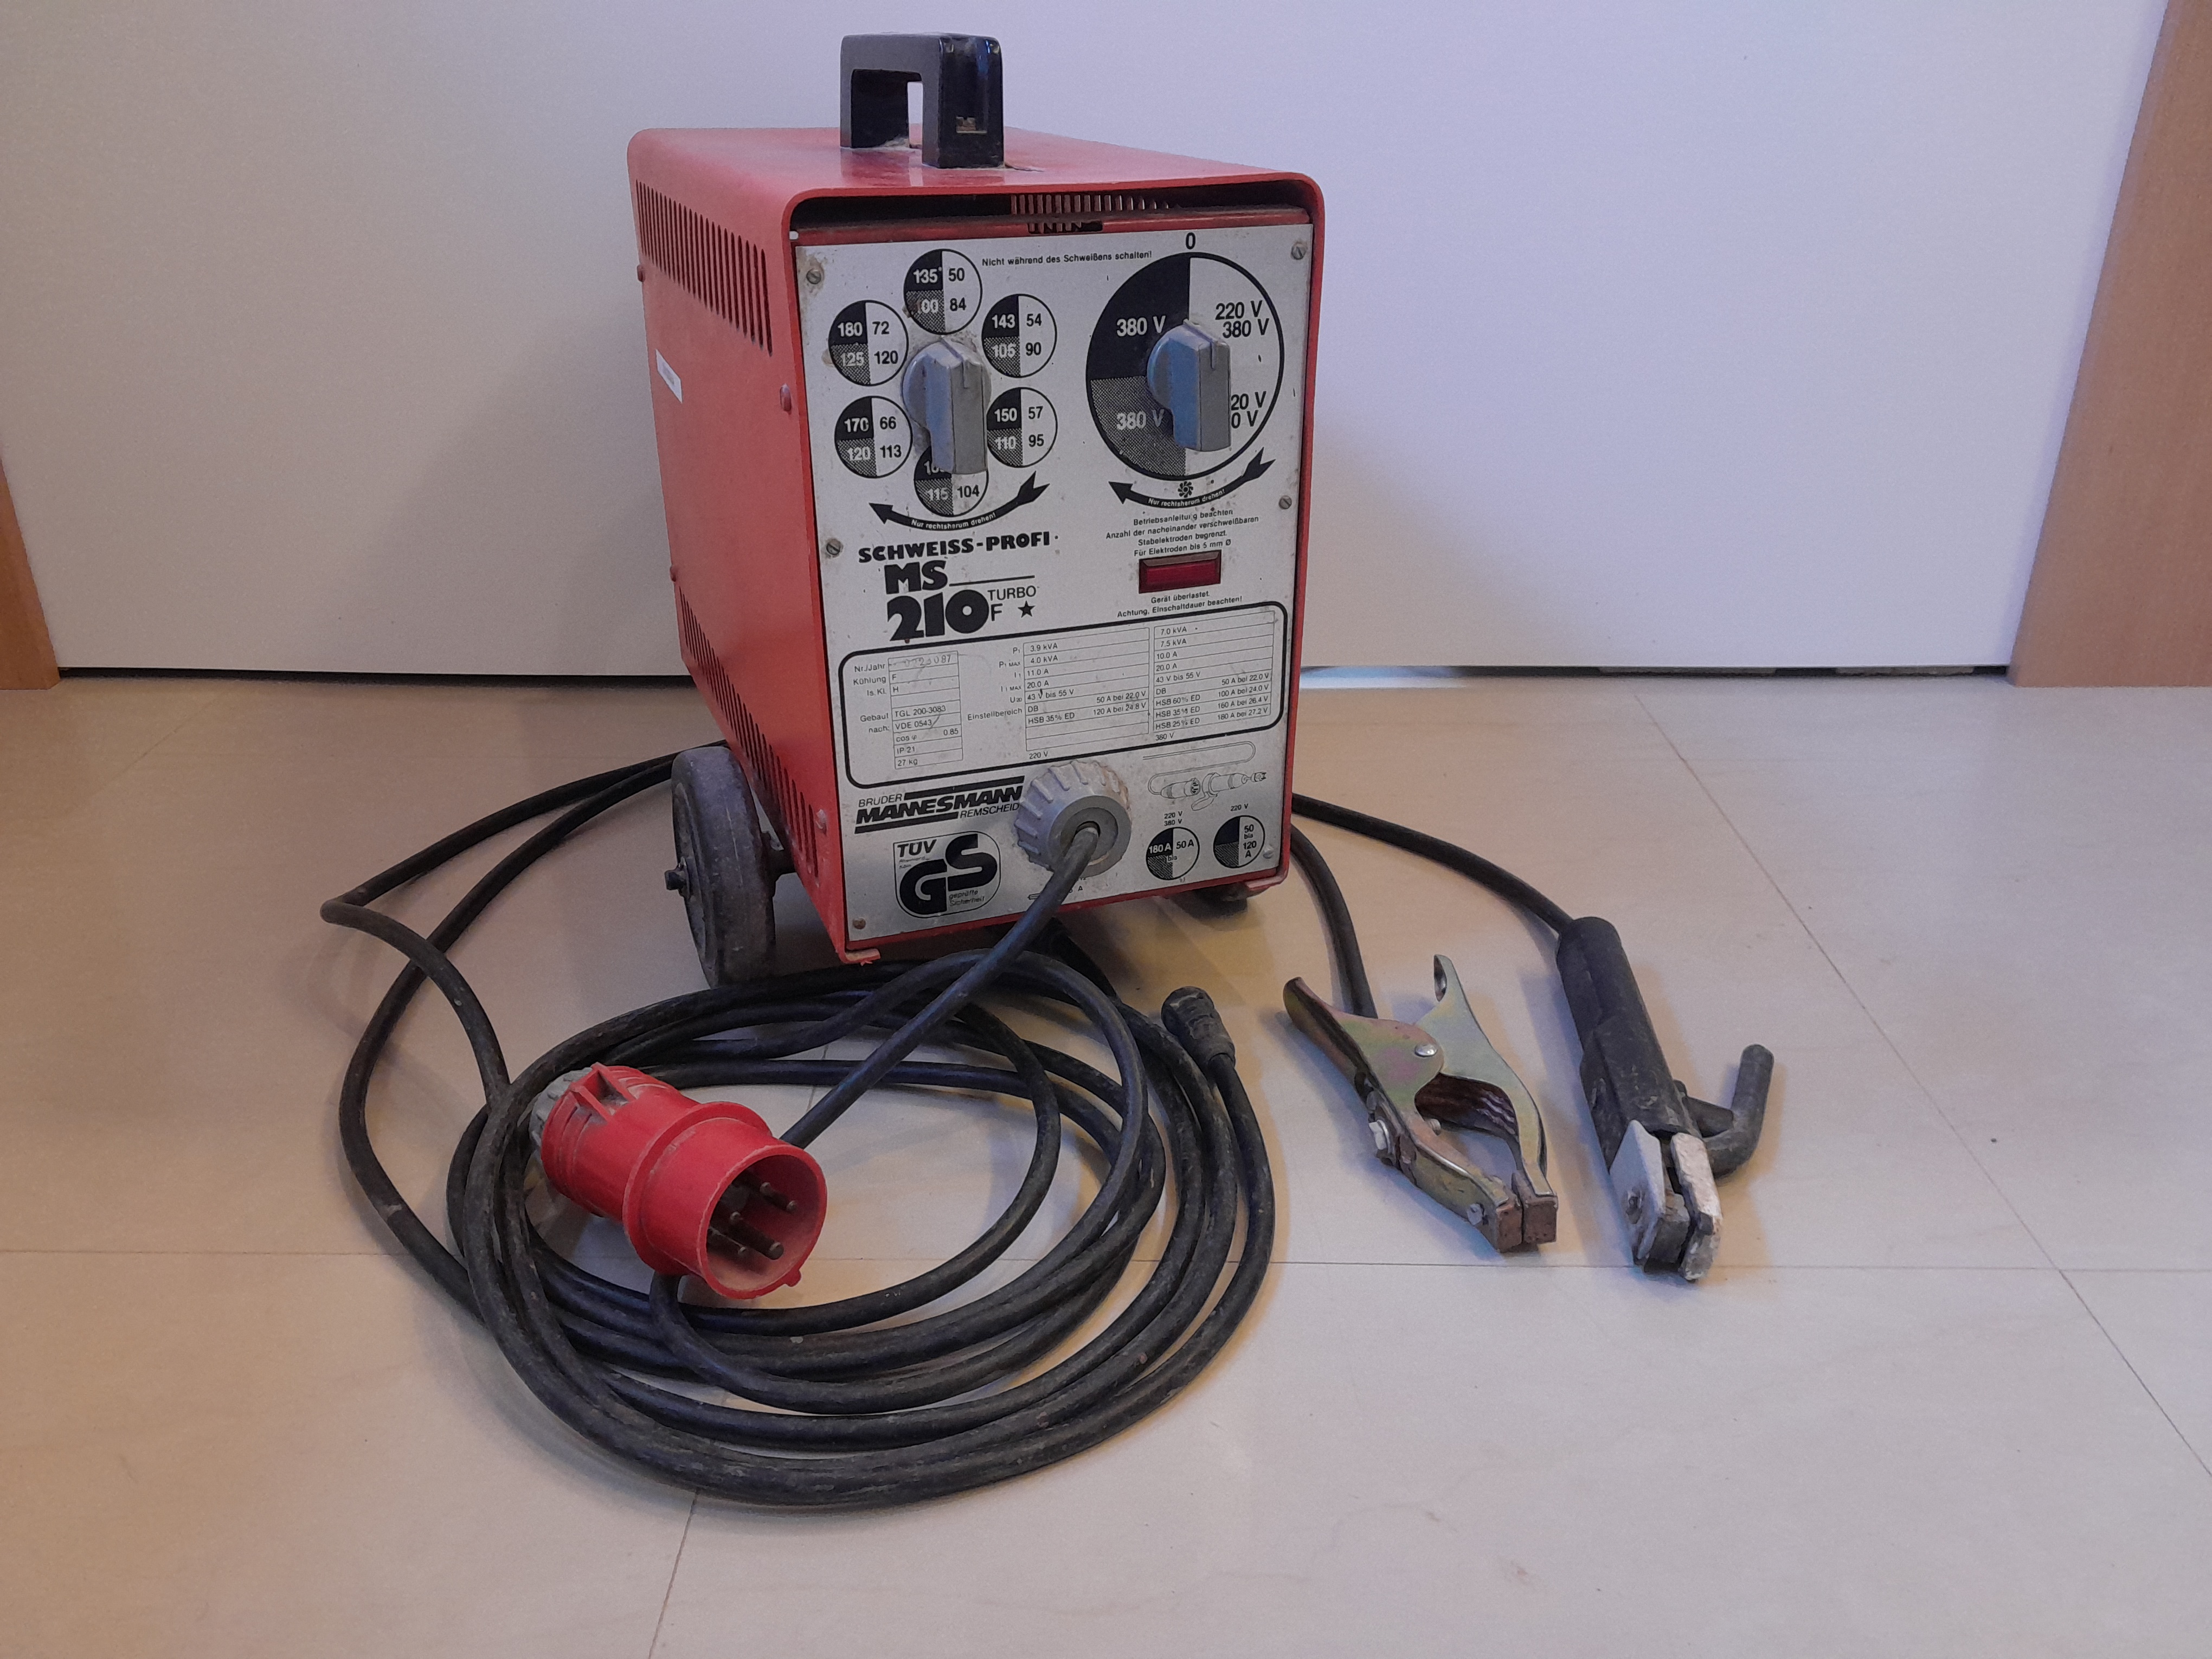 Schweißgerät (Elektroden) Mannesmmann Schweiss-Profi MS210 Turbo F